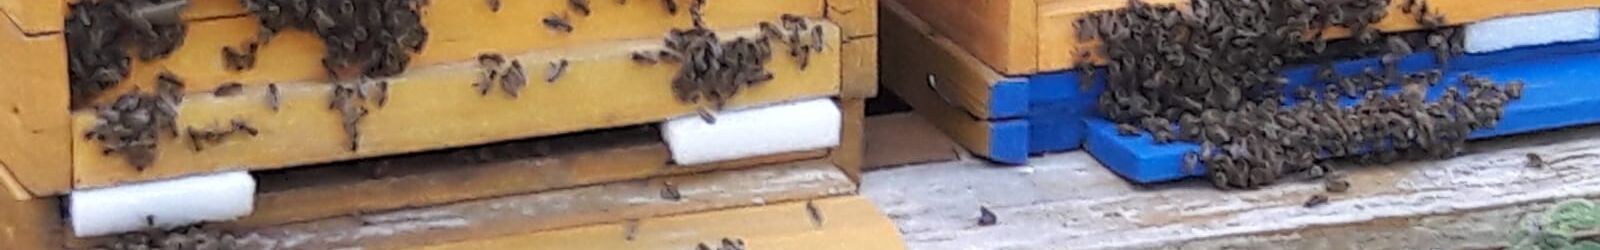 Bienen vor Beute